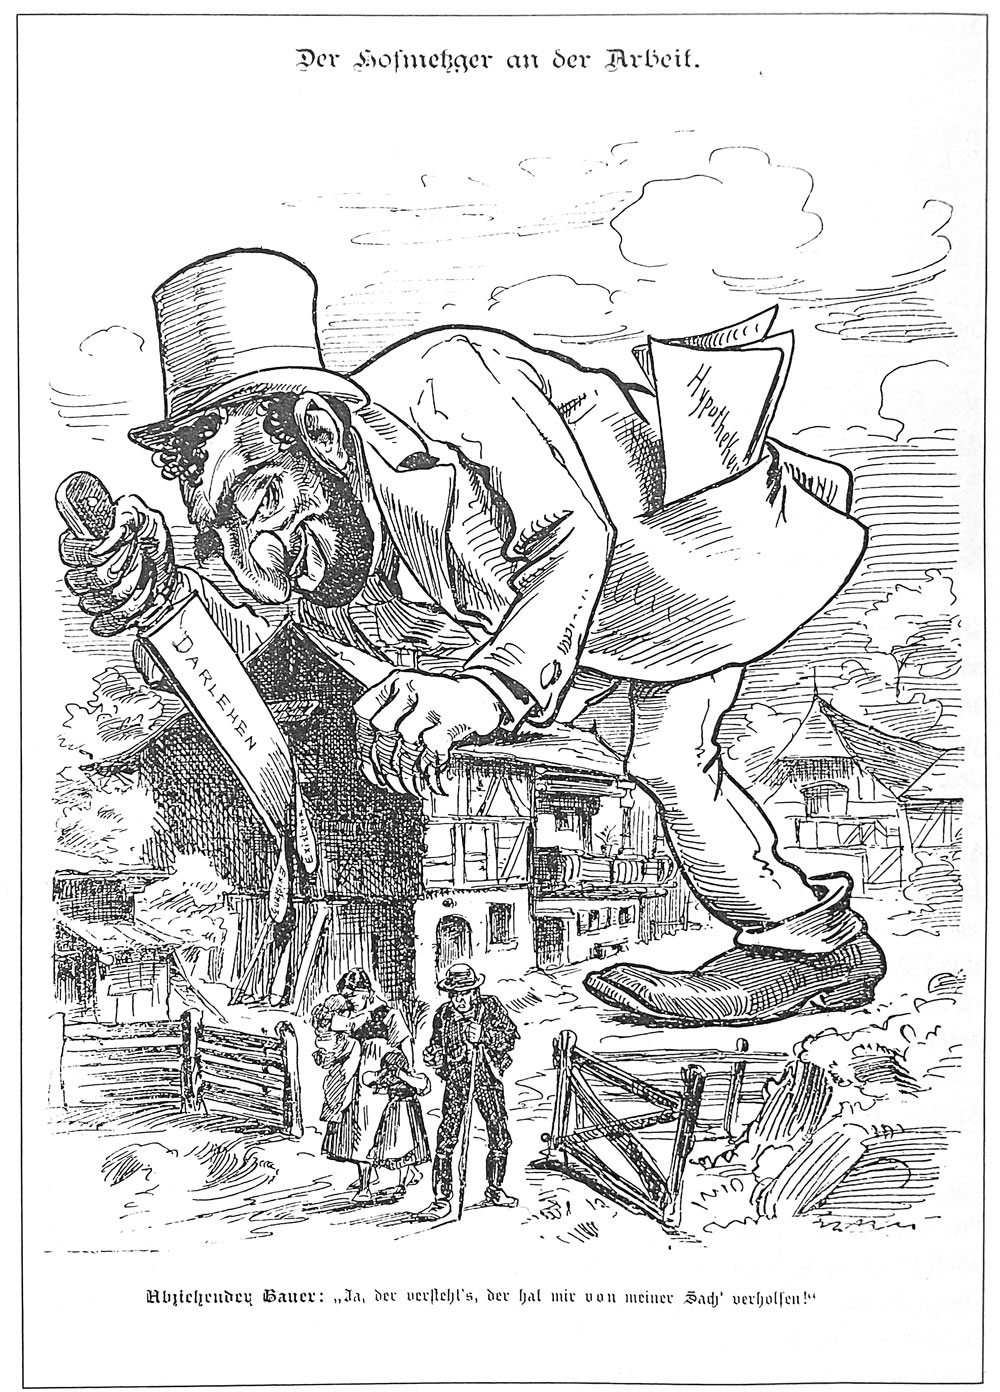 Karikatur: Der riesige Hofmetzger zerstückelt mit dem Messer, auf dem Darlehen steht, einen Bauernhof. Die Familie verlässt den Hof.